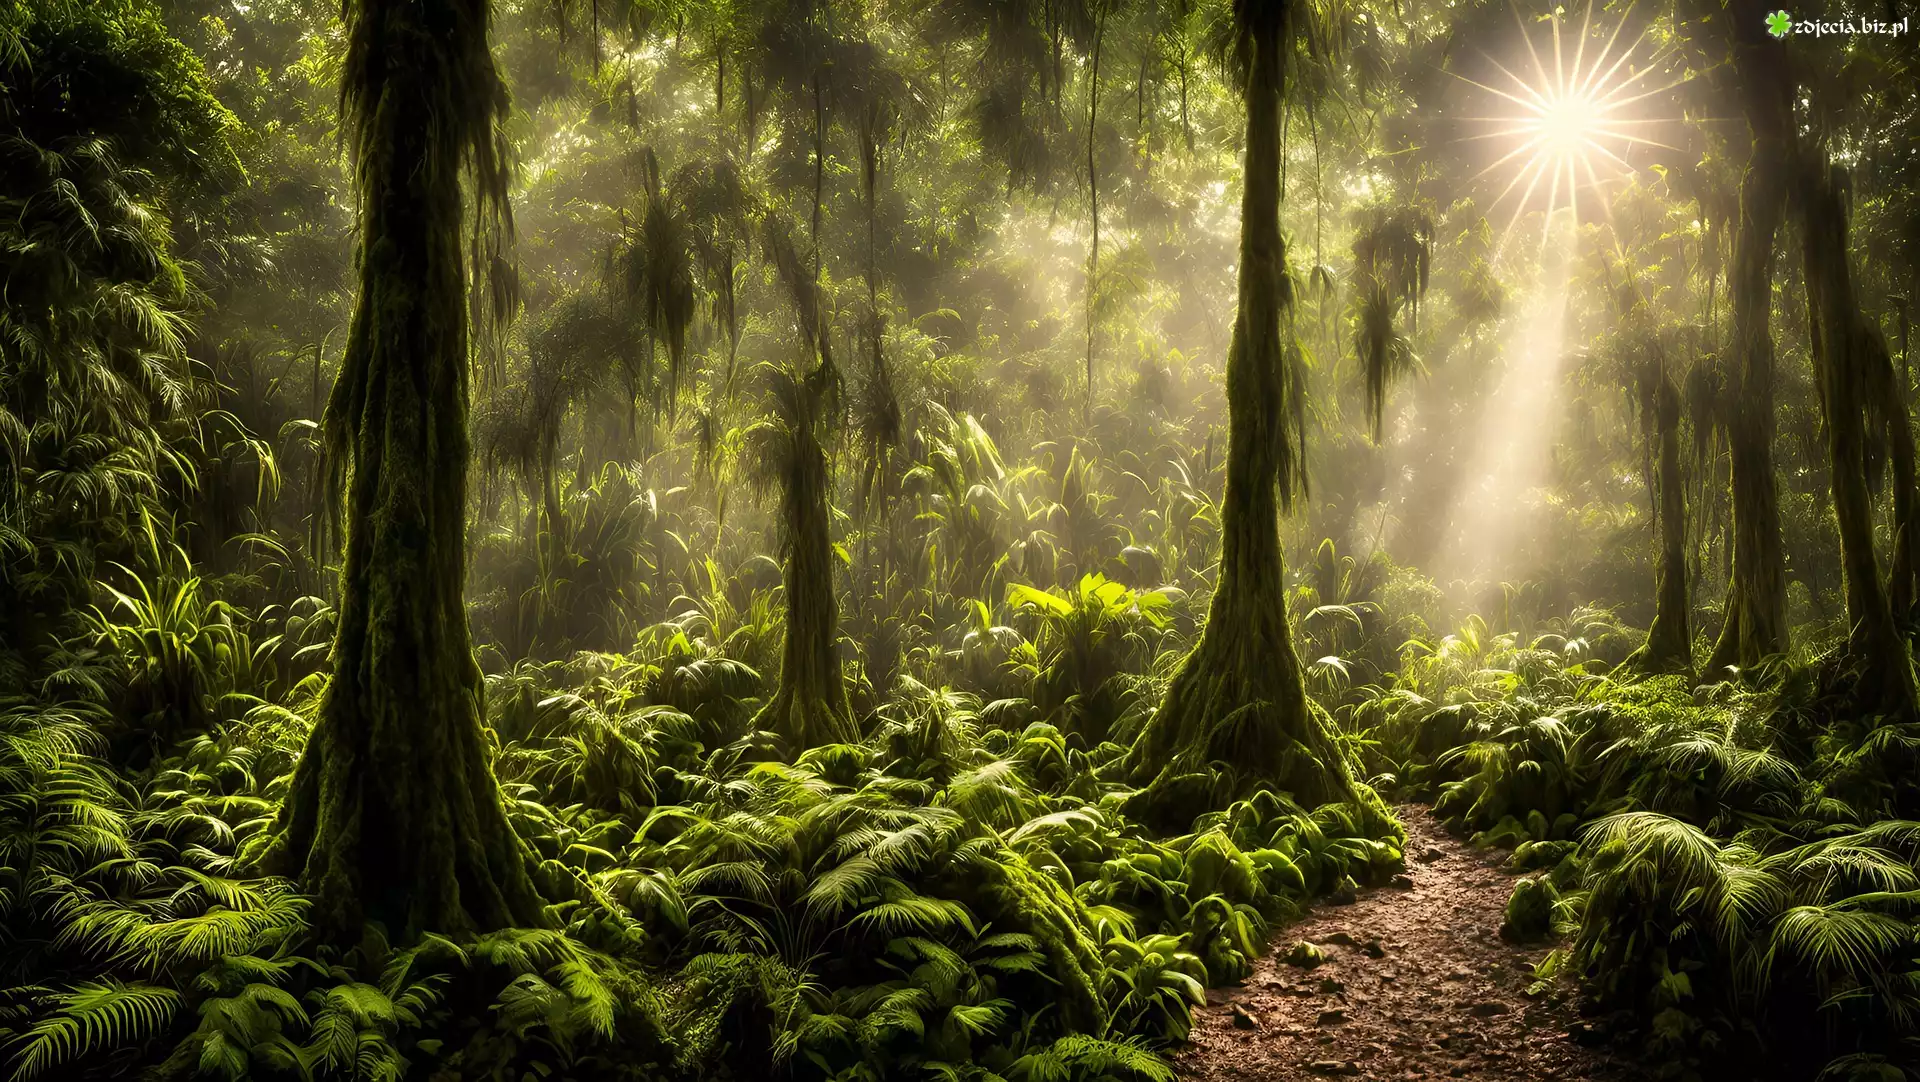 Las, Drzewa, Paprocie, Ścieżka, Paprocie, Roślinny, Promienie słońca